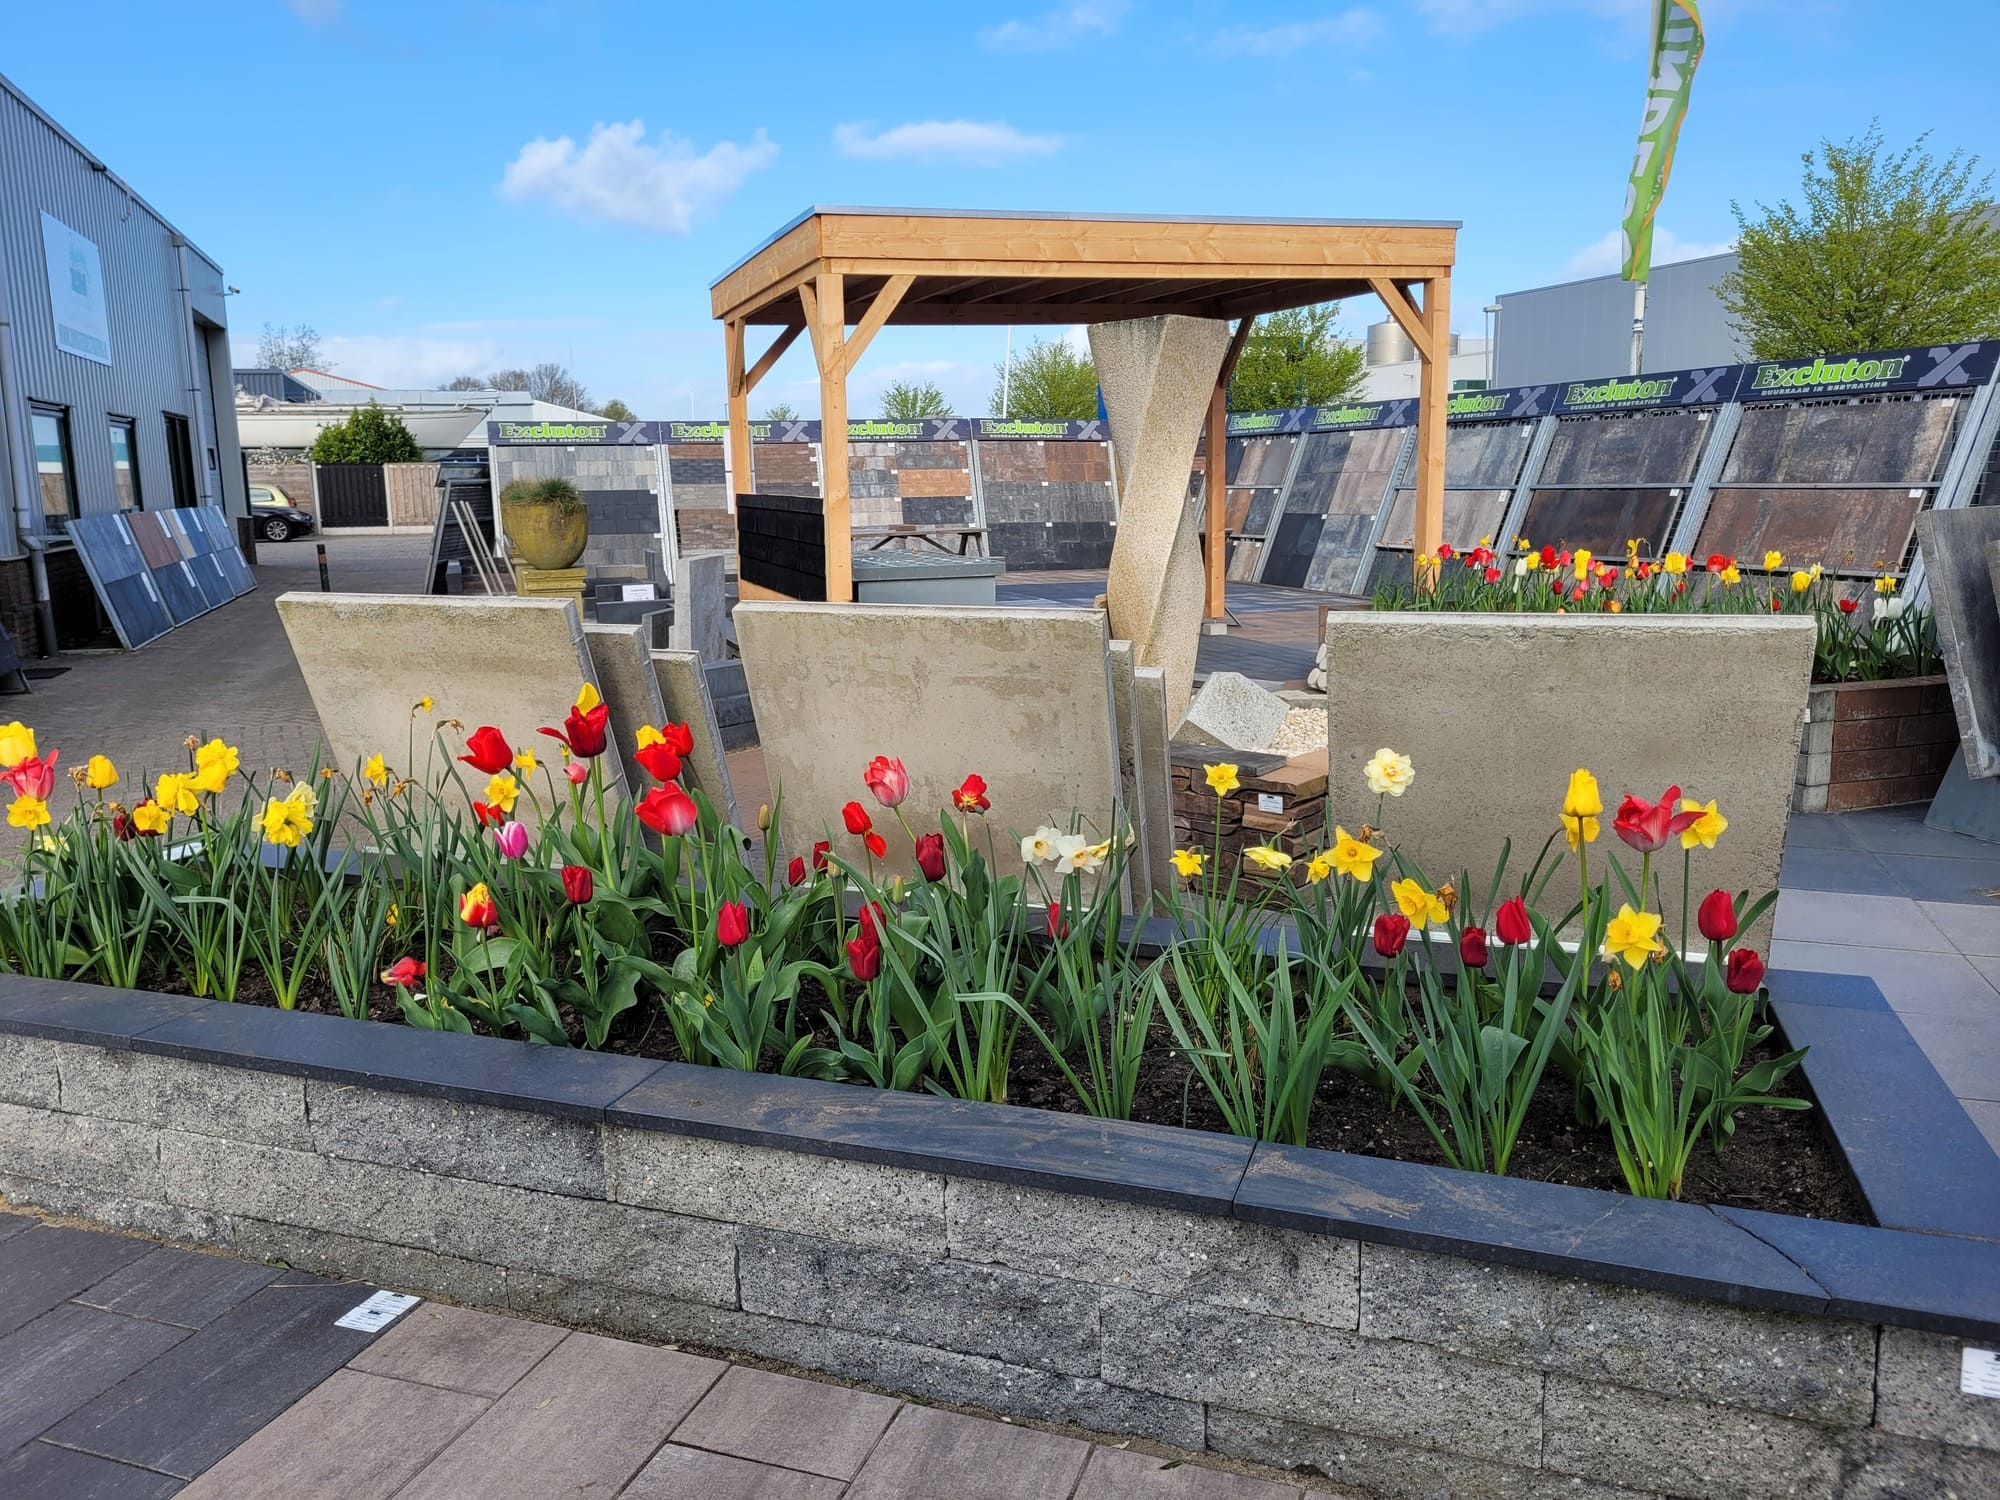 entoonstelling van bloeiende tulpen en narcissen in betonnen plantenbakken bij Zamsierbestrating, met een houten pergola en verschillende bestratingsmaterialen op de achtergrond.